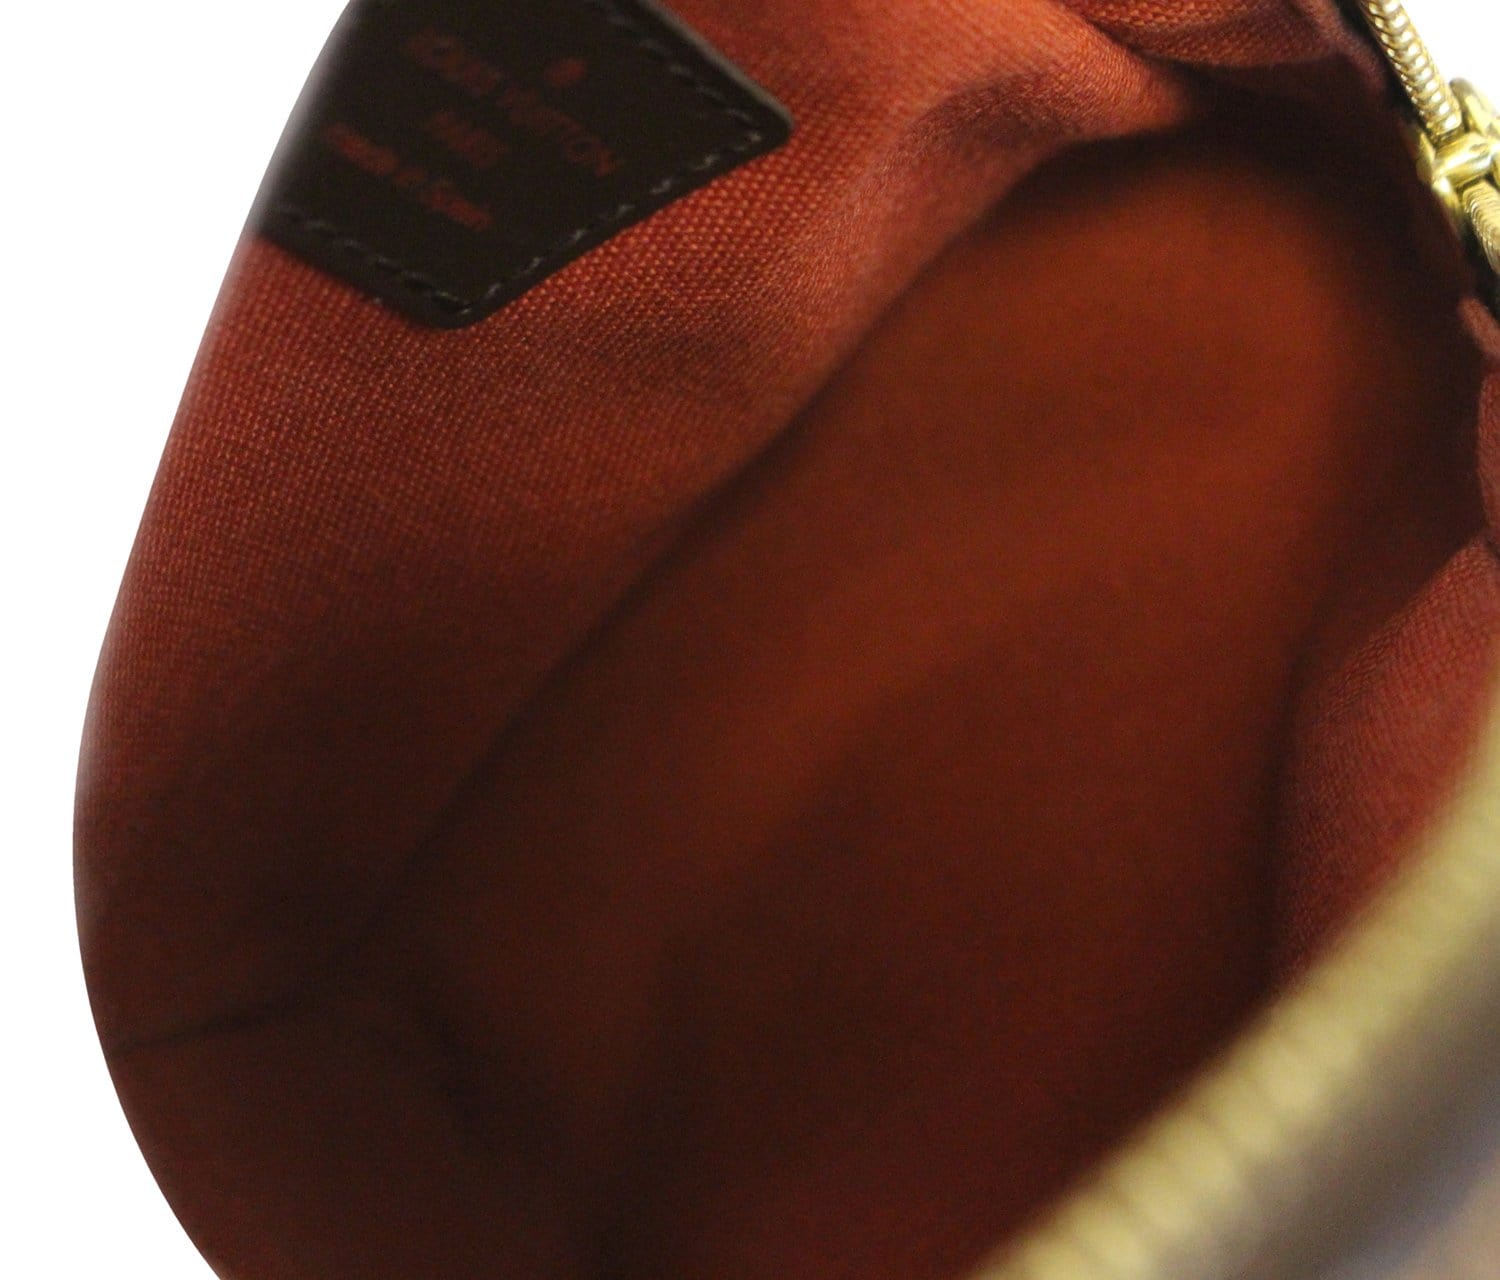 Geronimo cloth satchel Louis Vuitton Brown in Cloth - 36951623